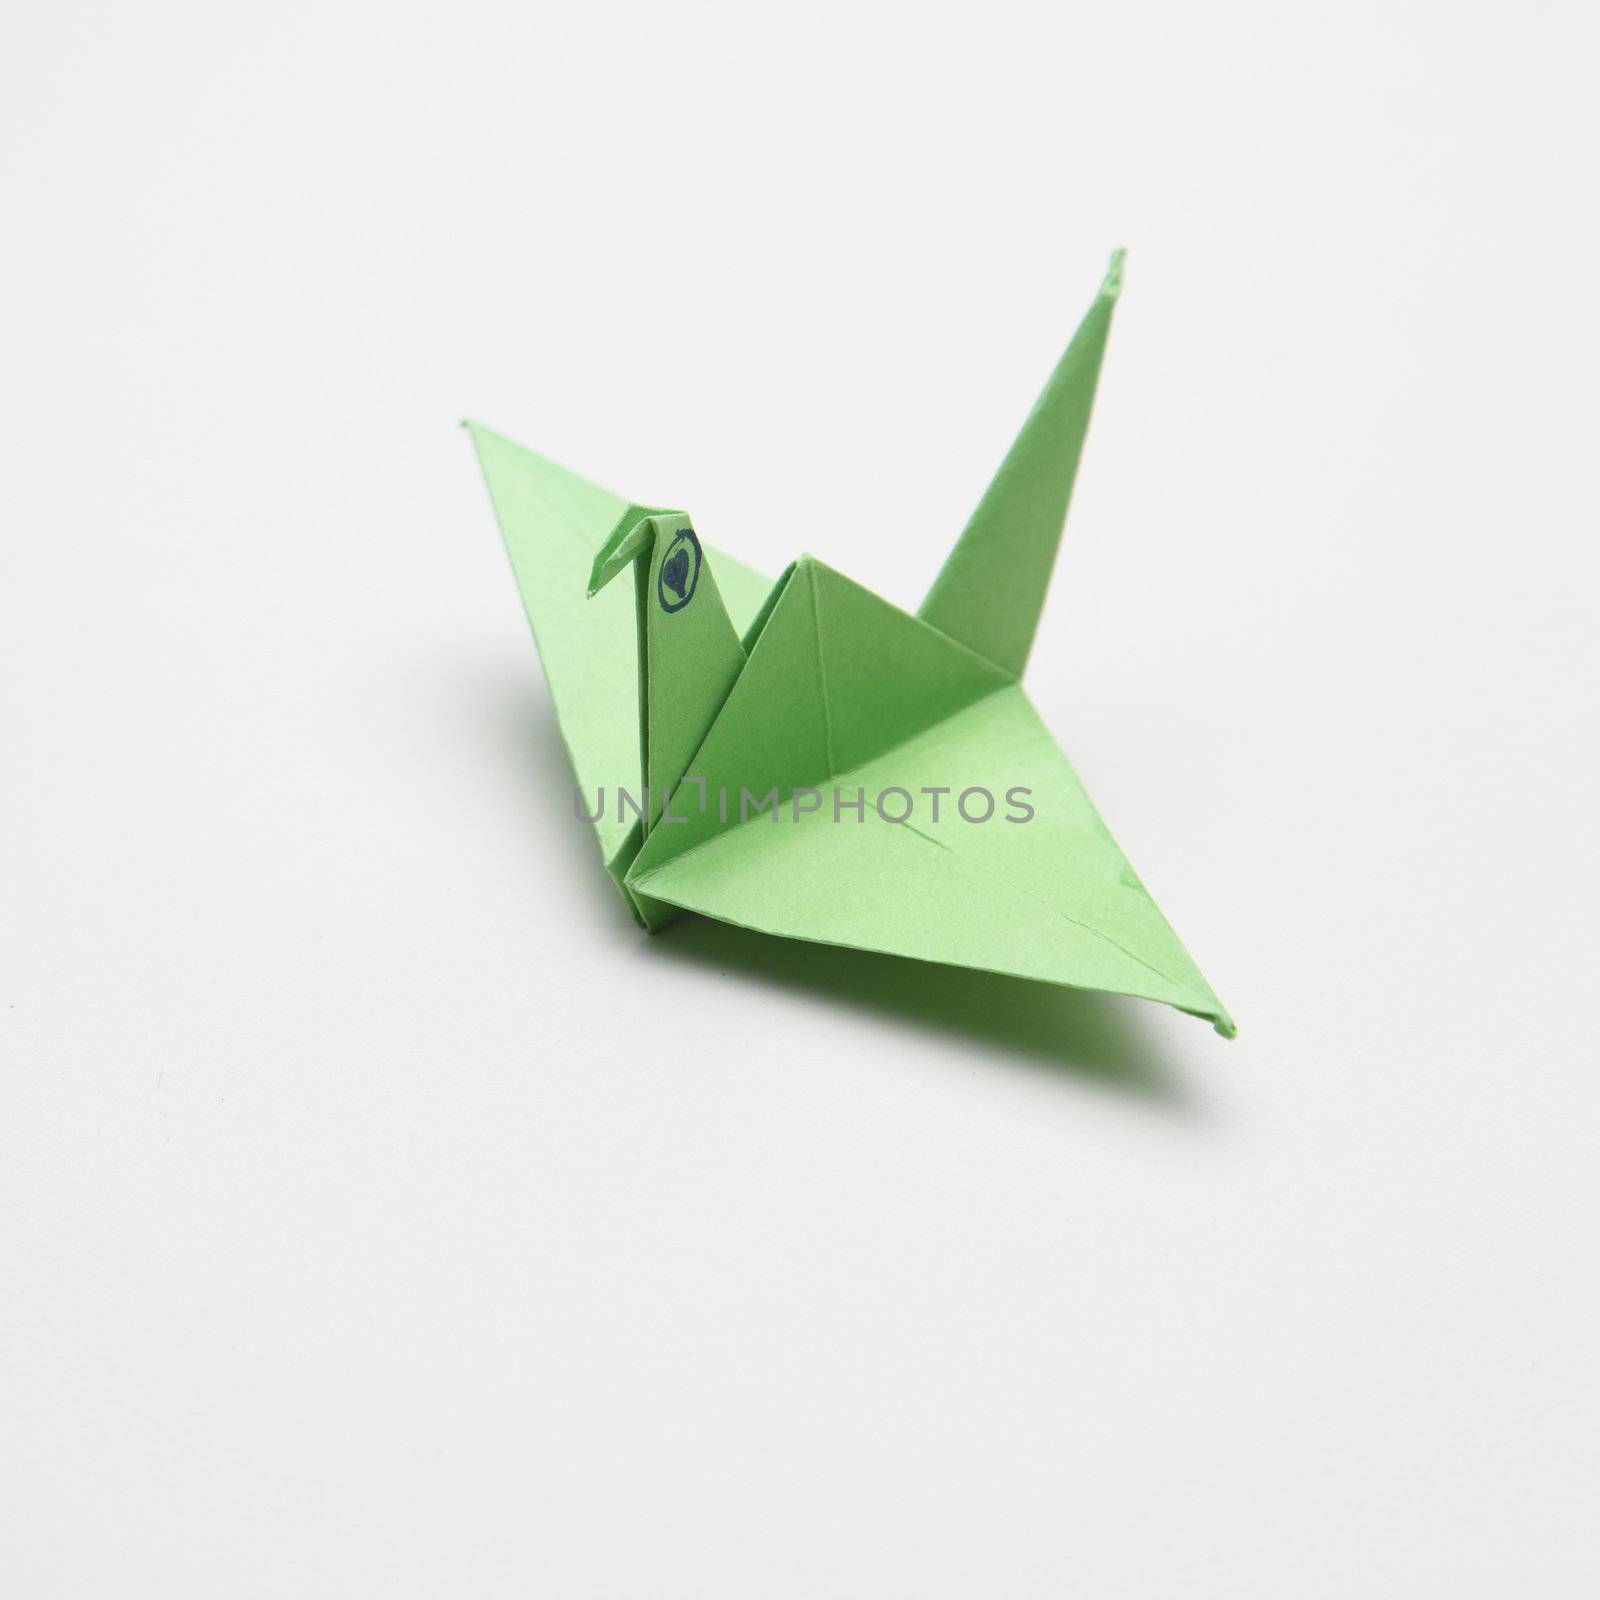 Origami bird by eskaylim